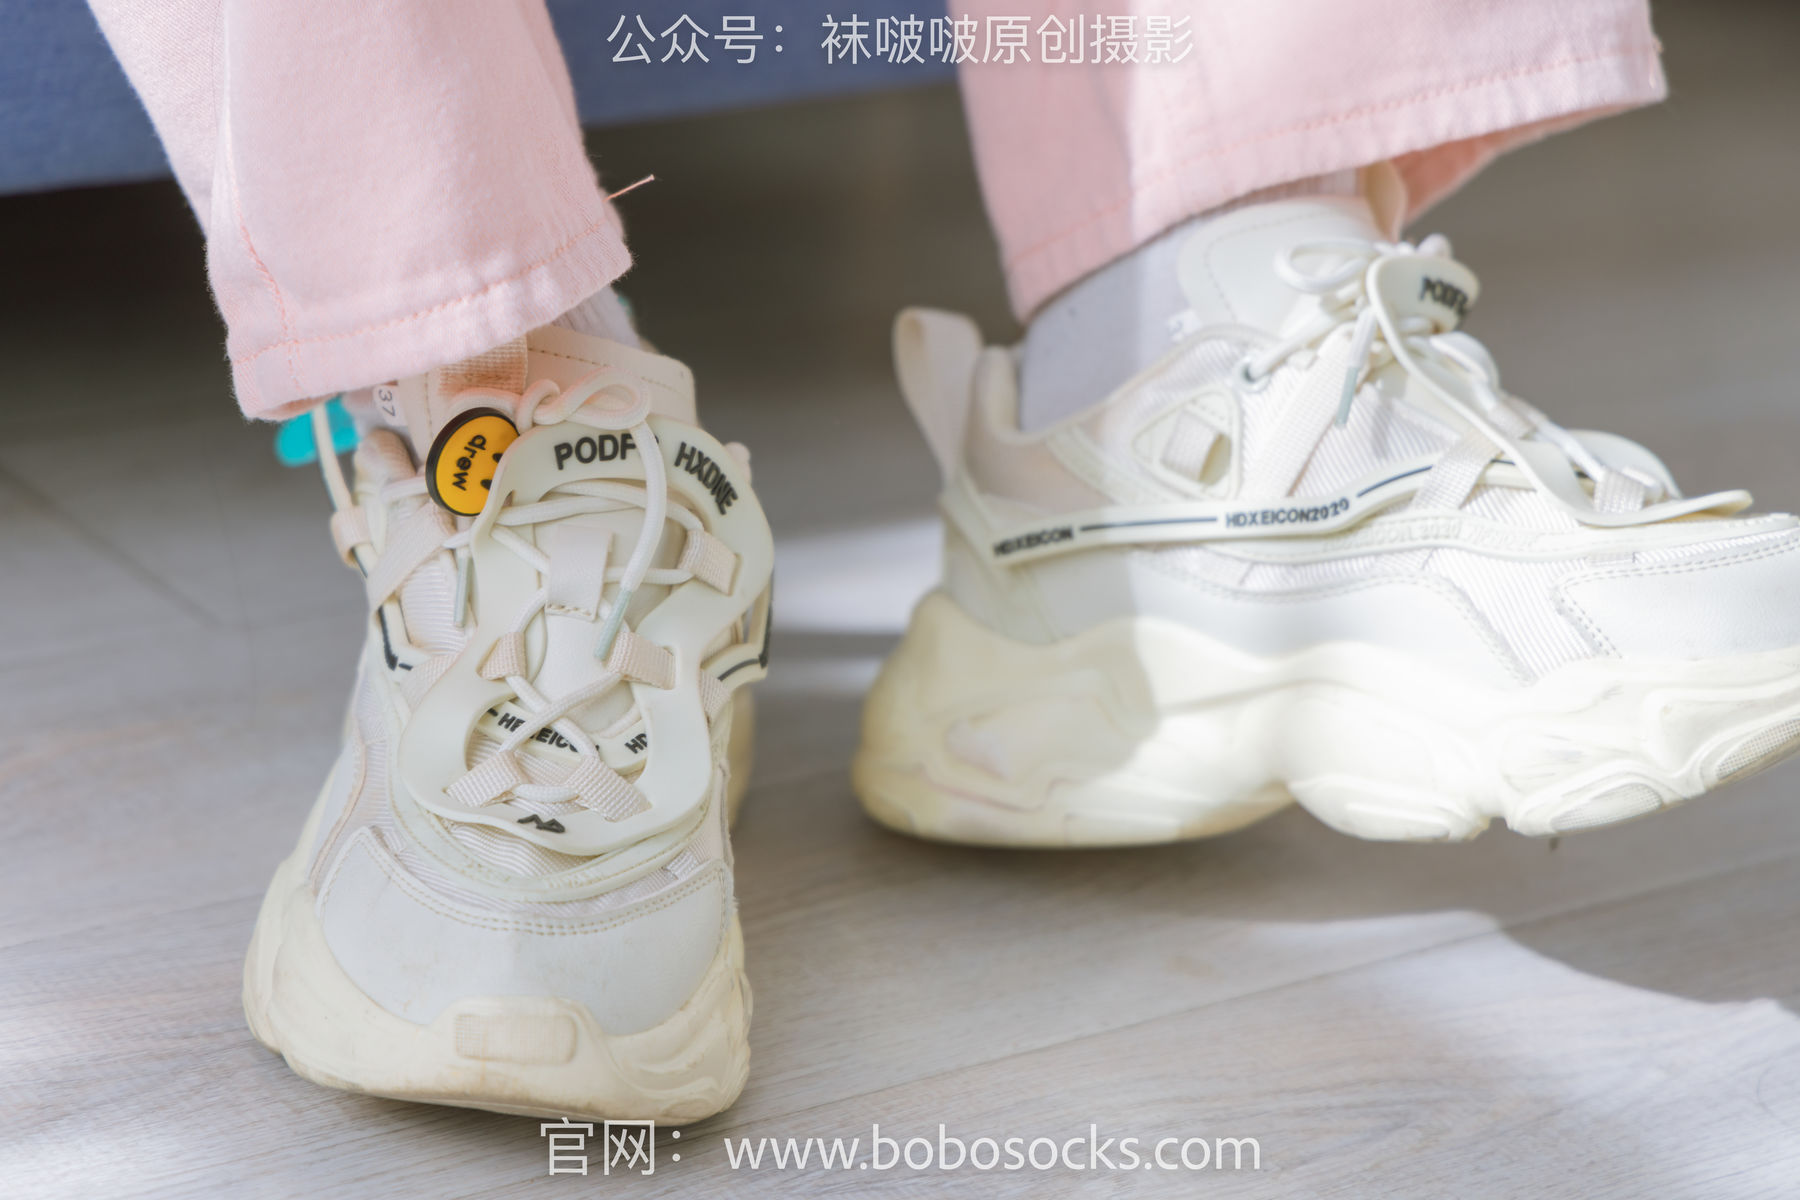 View - BoBoSocks No.141 周周-运动鞋、白棉袜、裸足 - 图库库